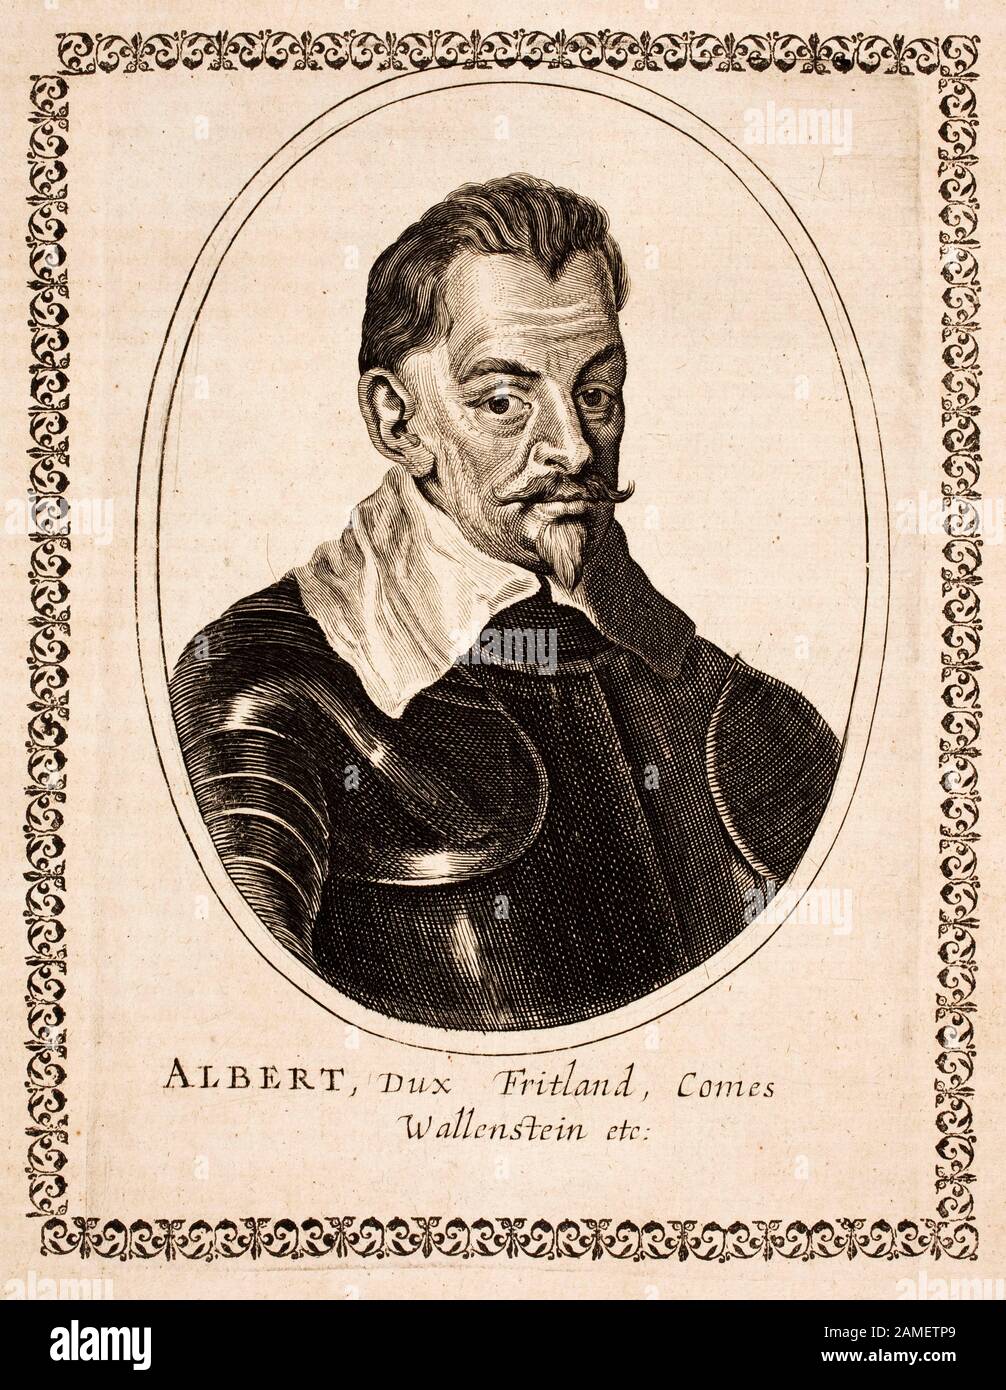 Portrait d'Albrecht von Wallenstein (1583-1634), un chef militaire et homme d'État de Bohême qui a combattu du côté catholique pendant la Wa de trente Ans Banque D'Images